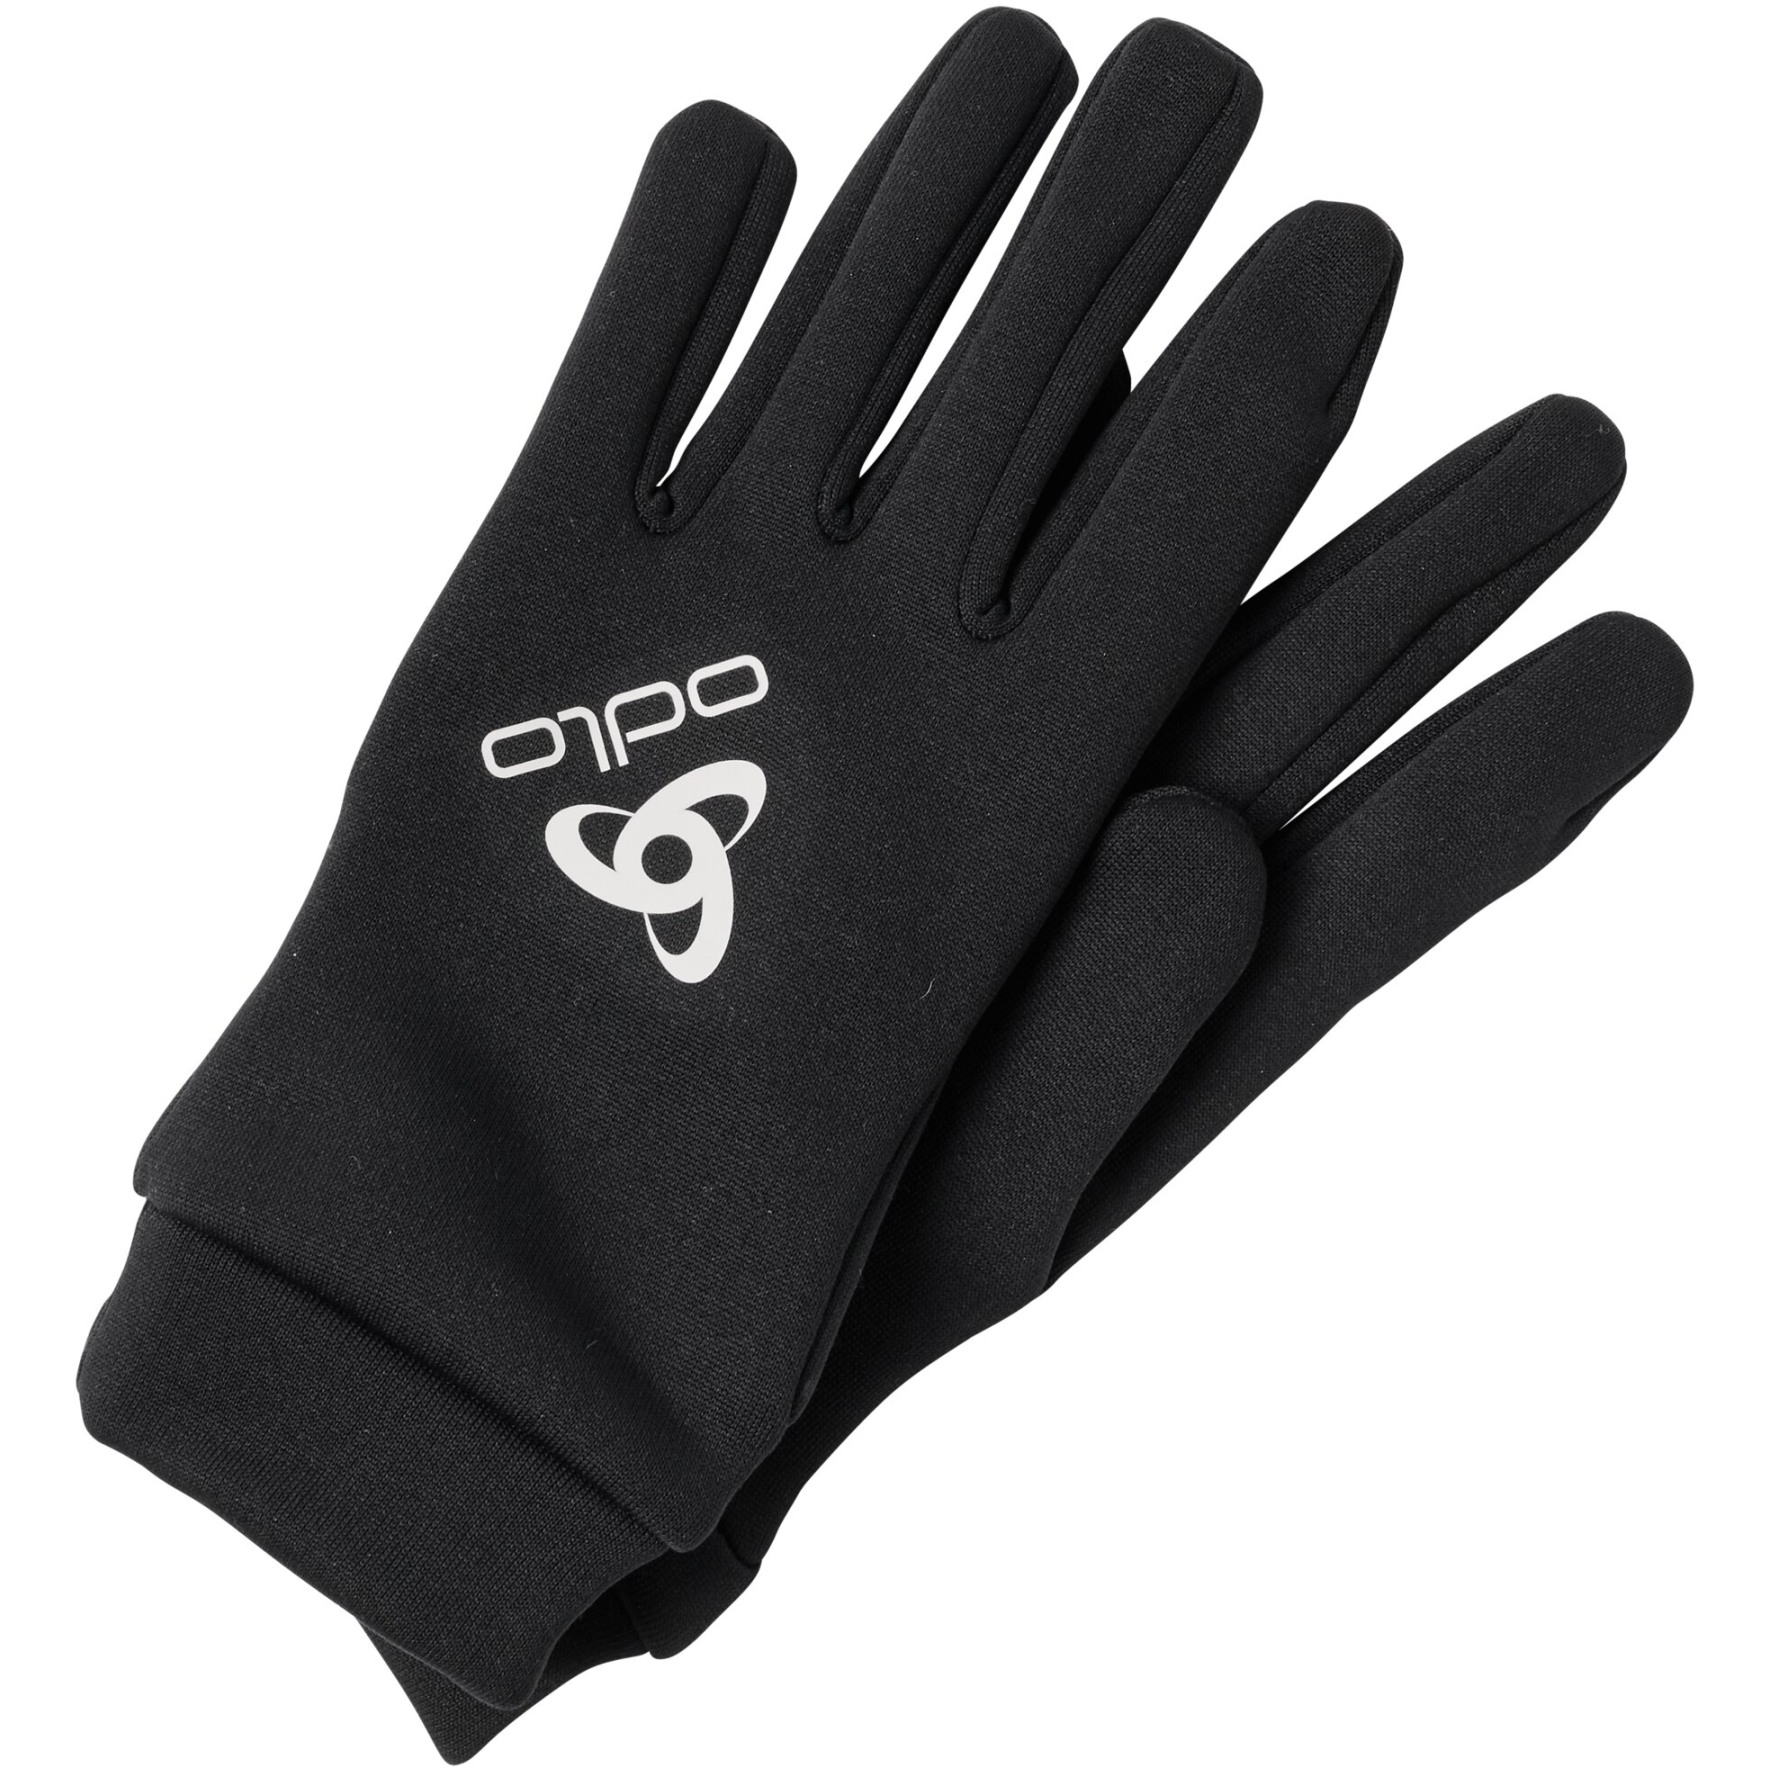 Productfoto van Odlo Stretchfleece Liner Eco Handschoenen - zwart